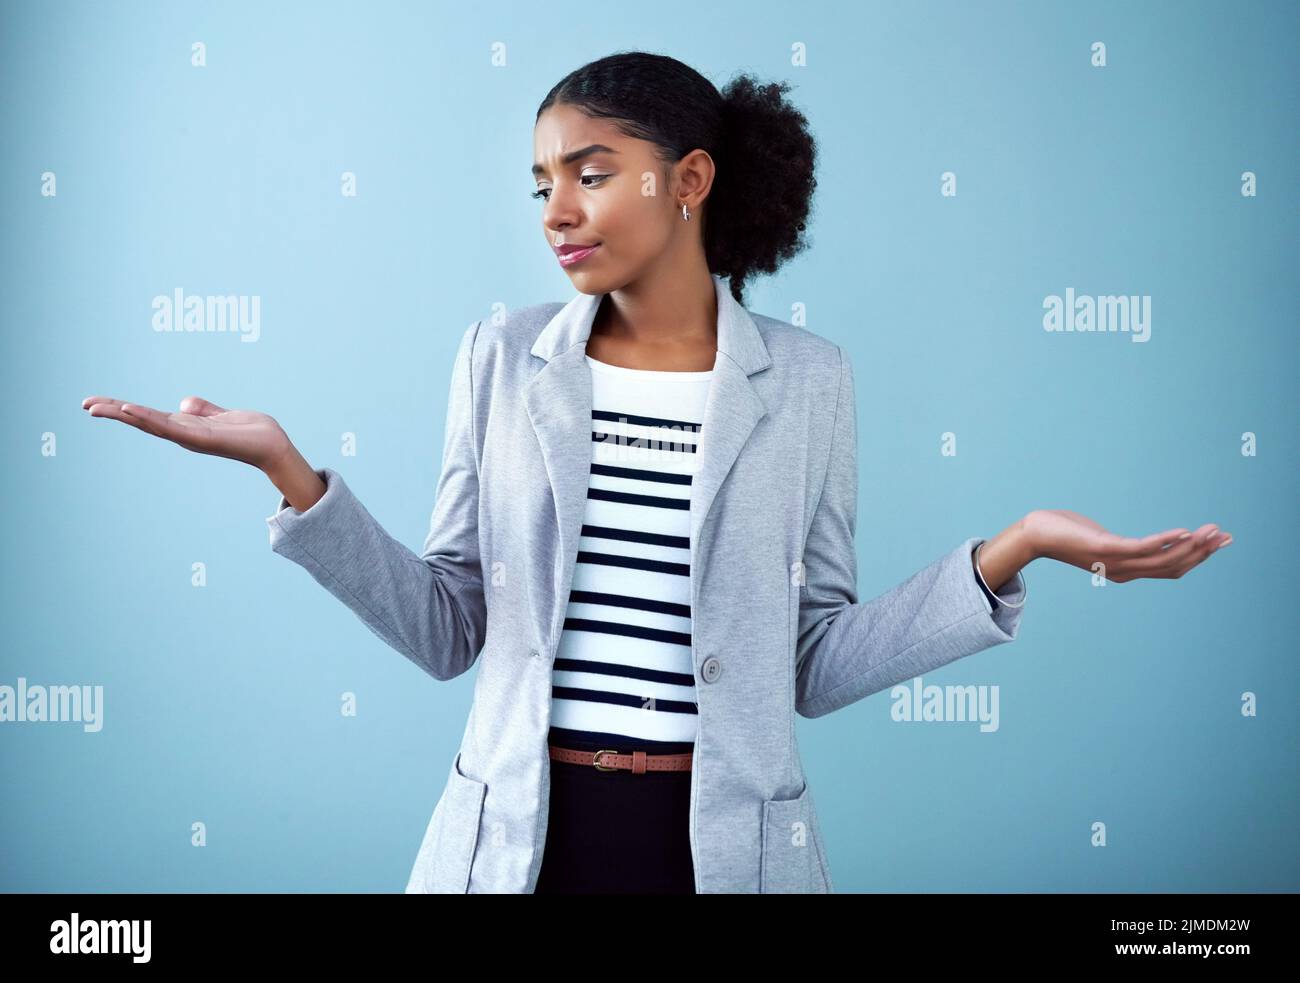 Verwirrt und seriös Geschäftsfrau mit offenen Händen oder Handflächen Emoji Pose eine schwierige Entscheidung über die zukünftige Karriere auf blauem Hintergrund. Unsicher Stockfoto